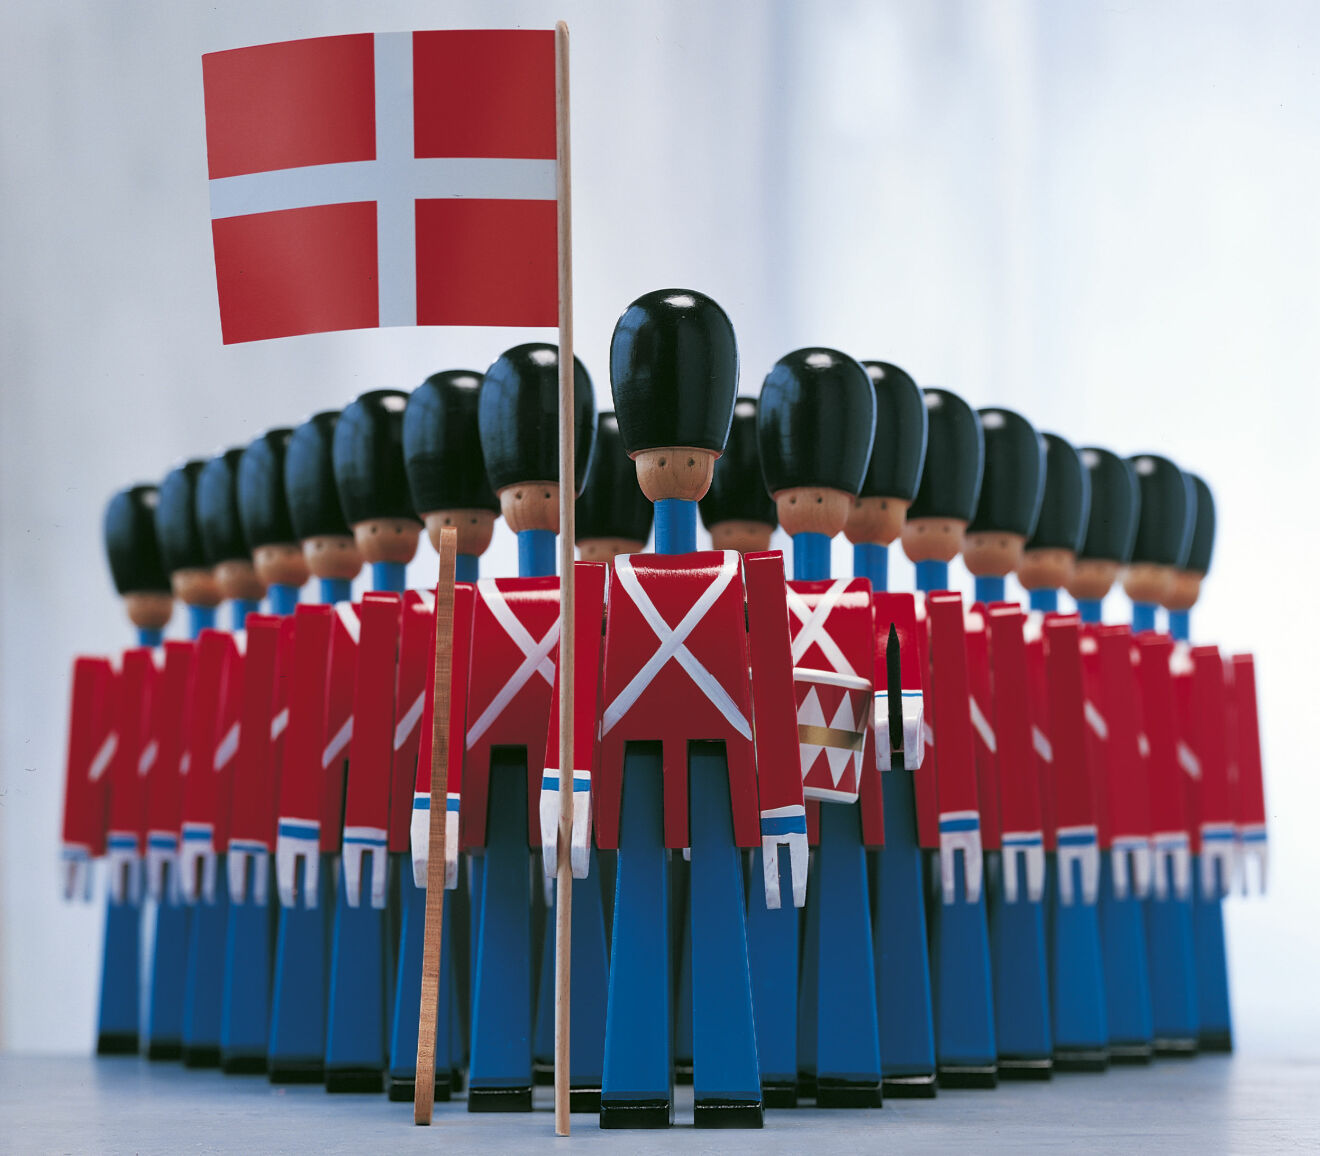 Dronningens soldater med dansk flagga i handen – design av Kay Bojesen.